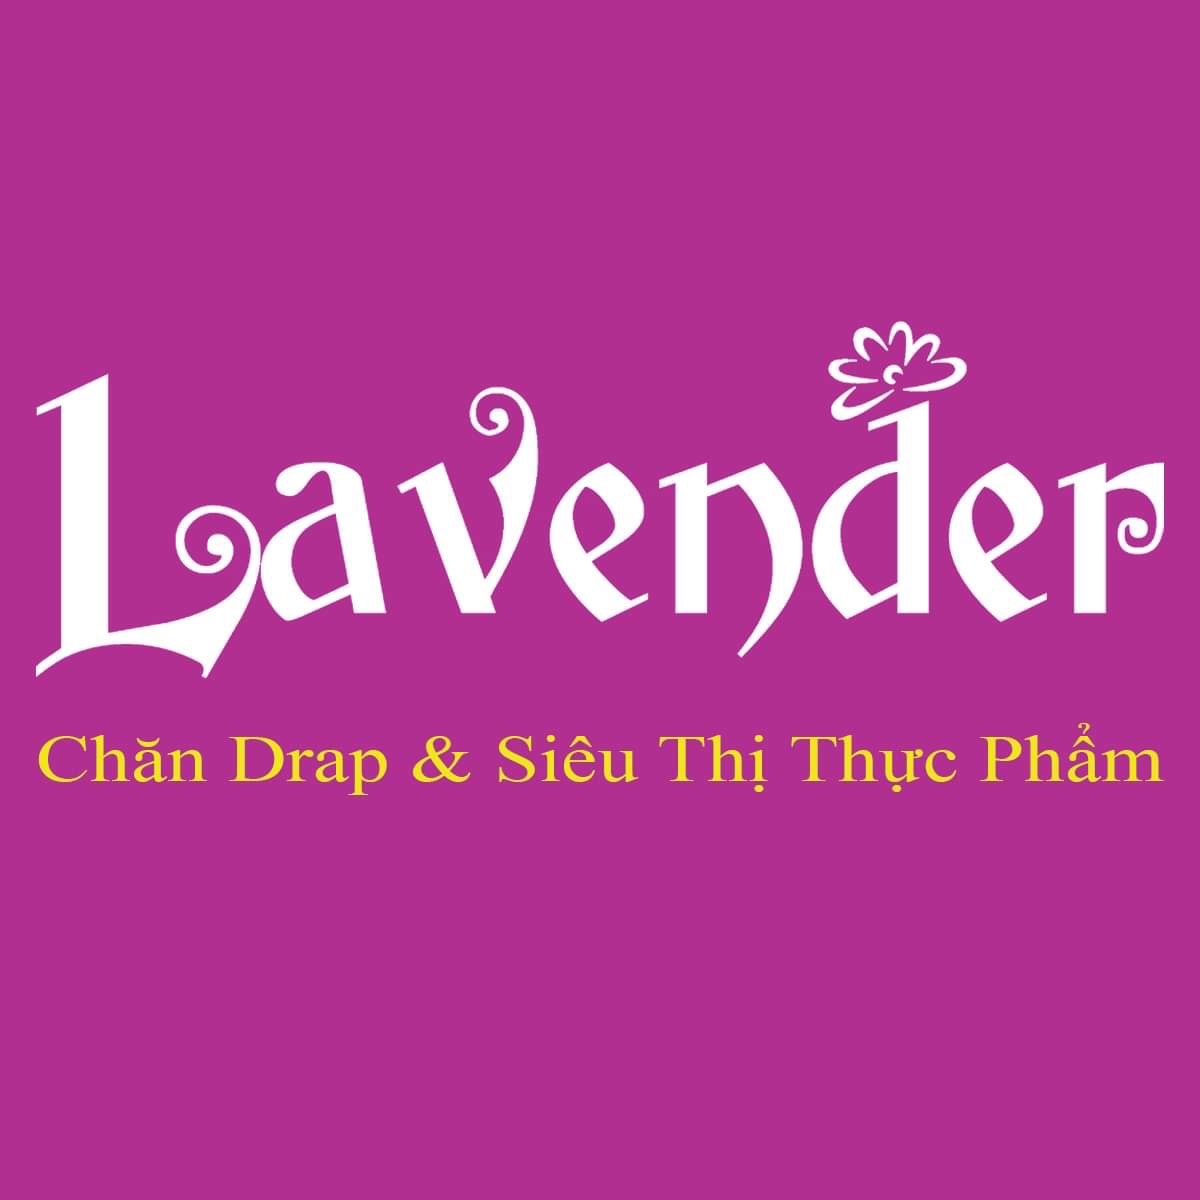 Lavender – Chăn drap HQ: Thương hiệu lâu nay luôn đặt uy tín và chất lượng đáng tin cậy là số một, nên đã chiếm được trái tim khách hàng”